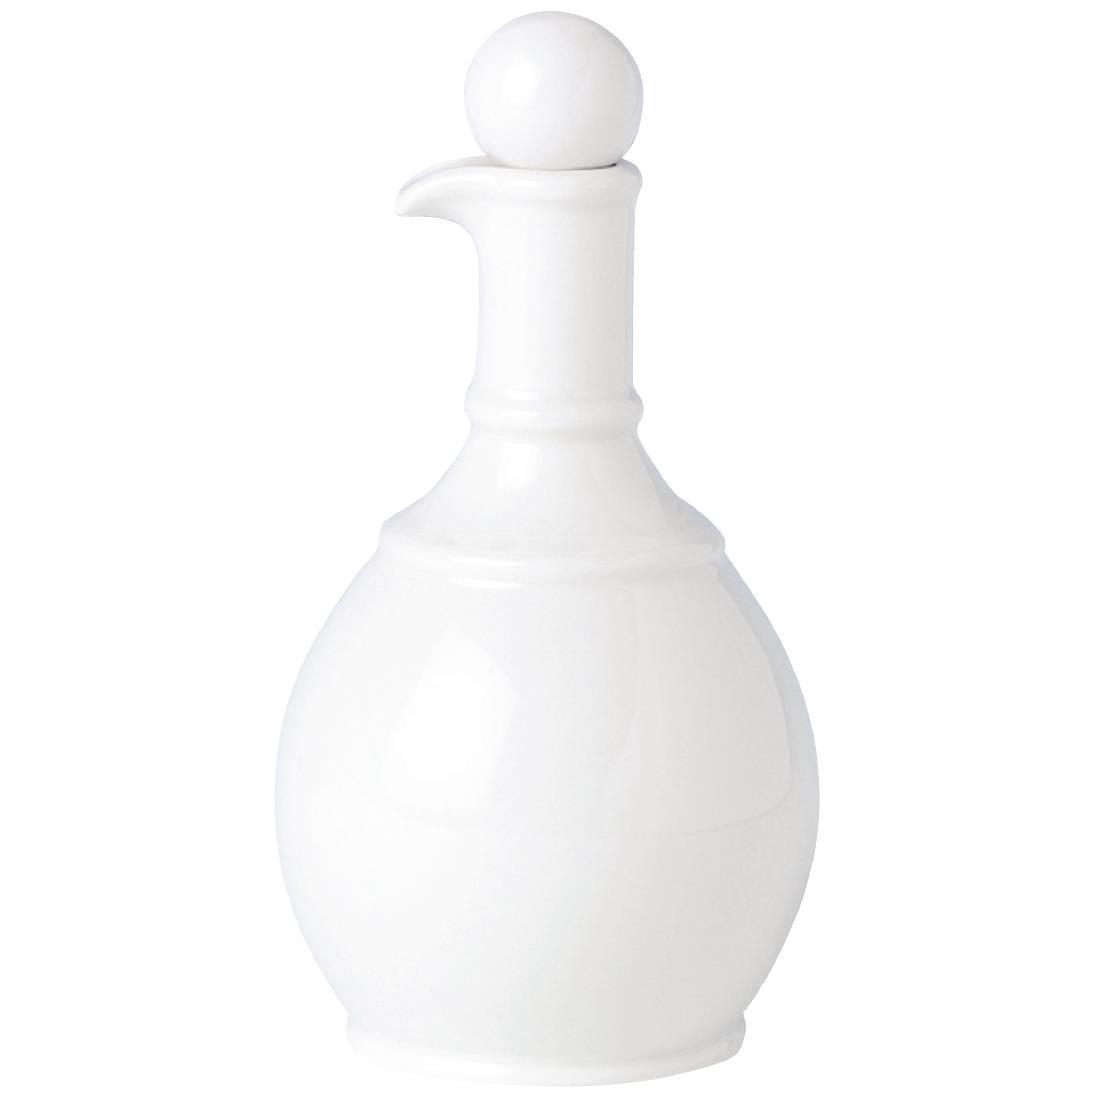 Steelite Simplicity White Oil or Vinegar Jar Stoppers (Pack of 12) - V9332  - 1